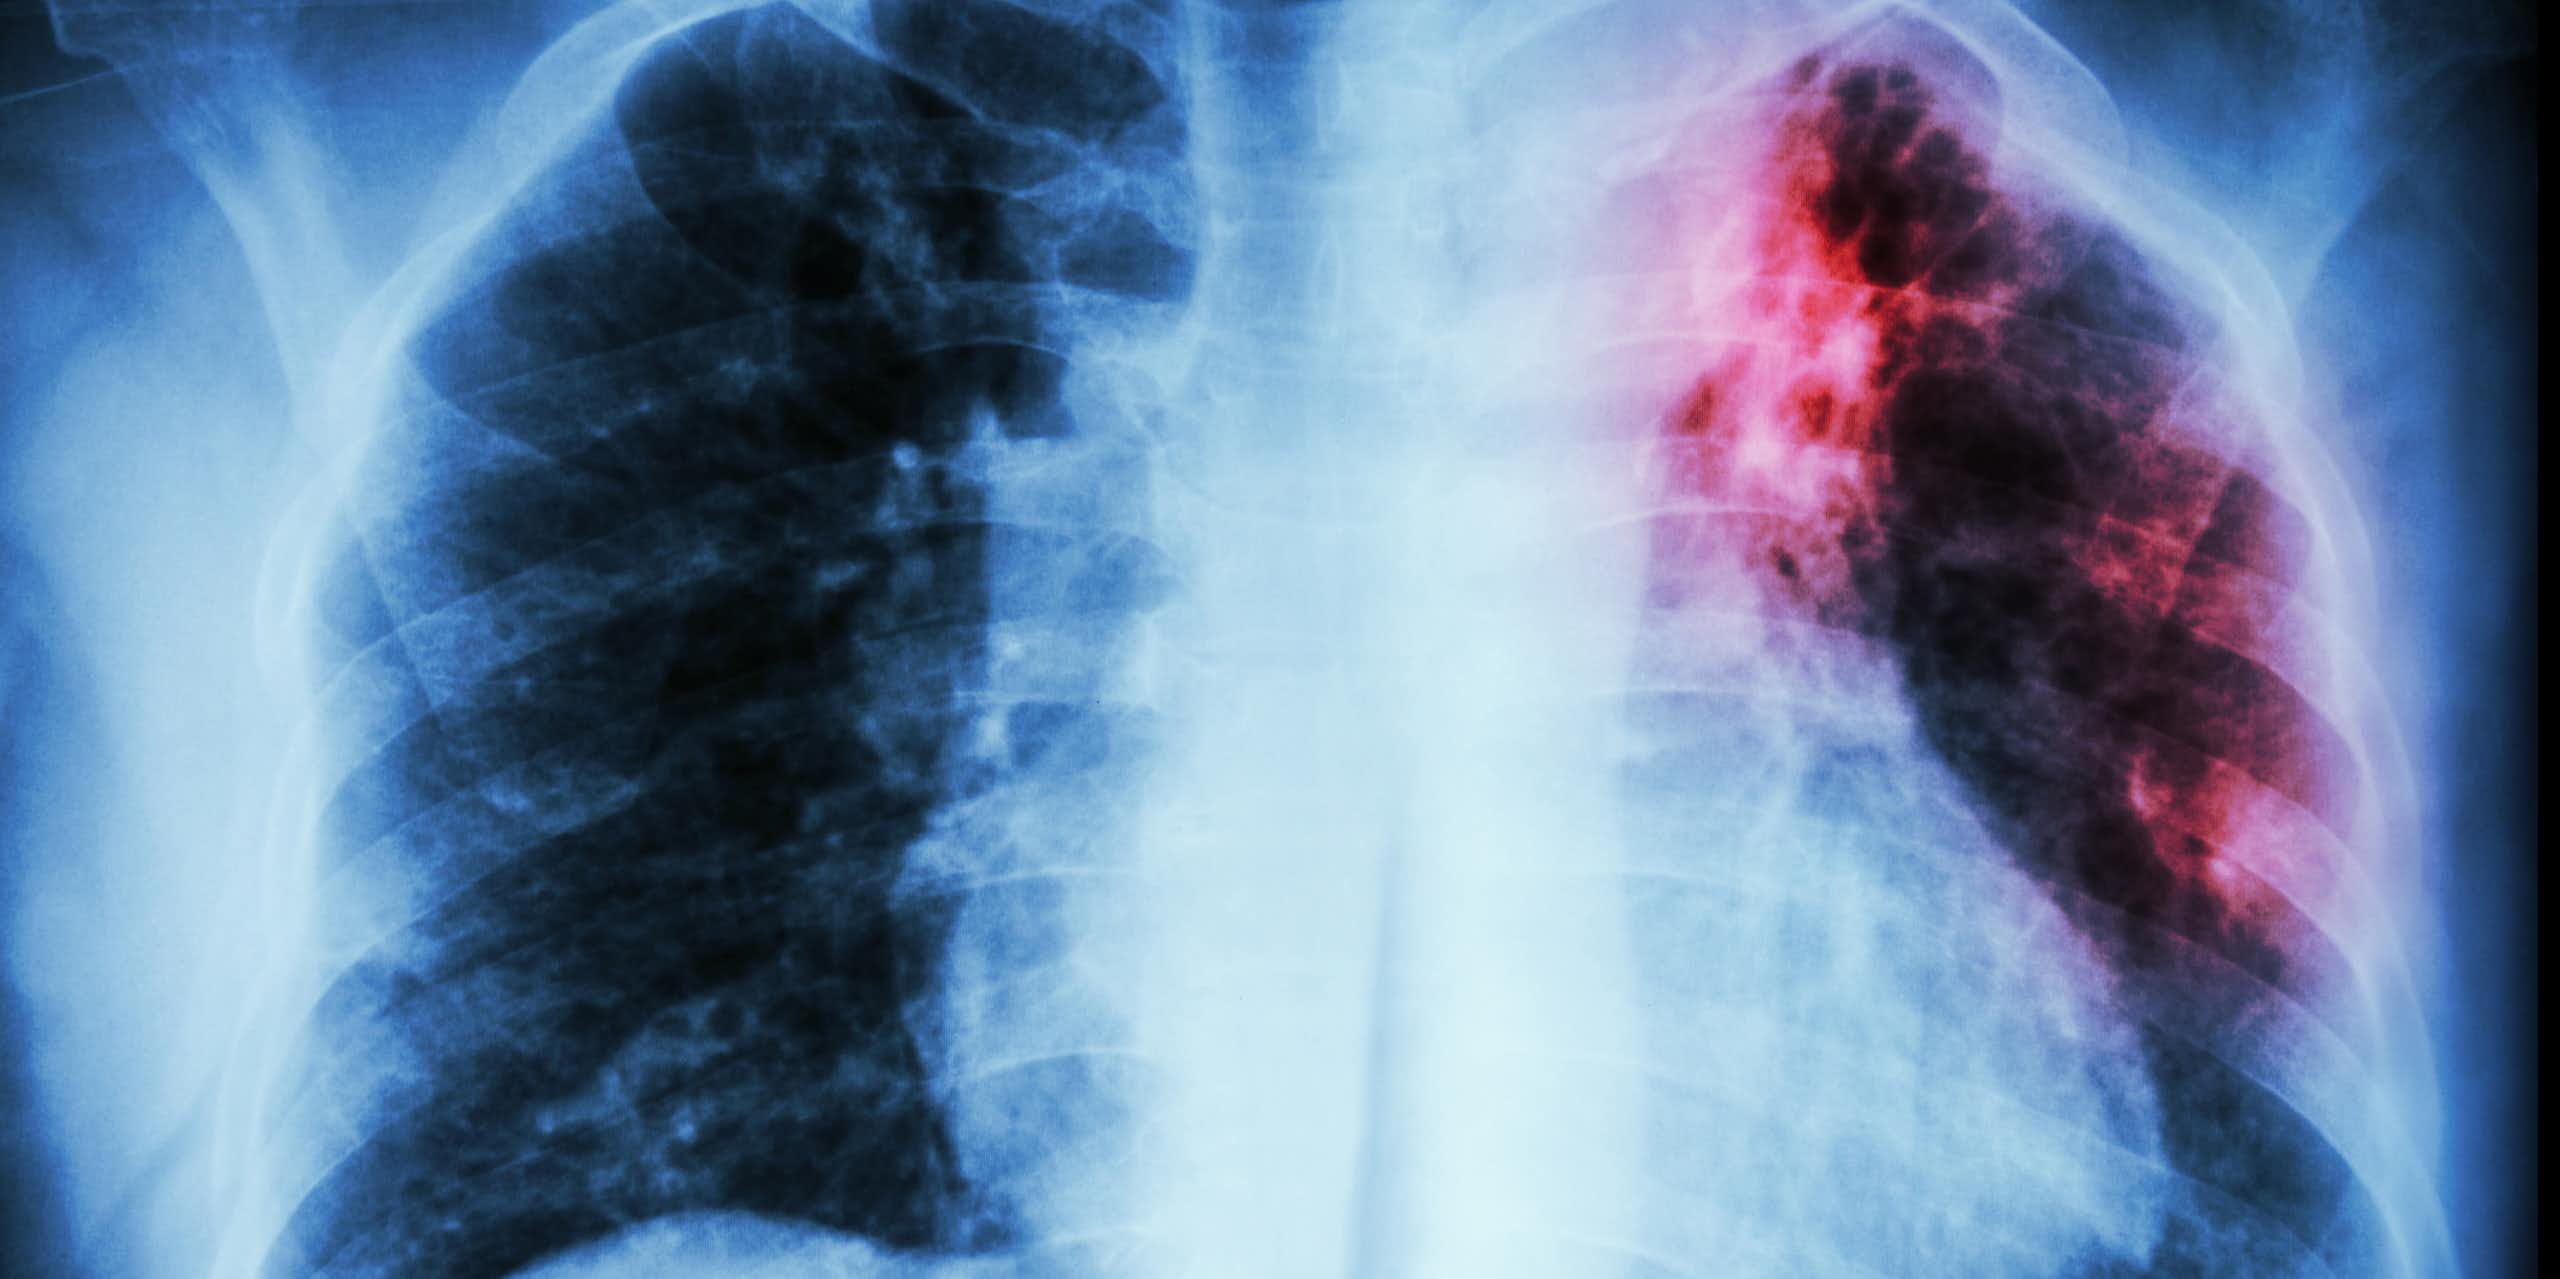 Radiografia de tórax com opacidade vermelha na parte superior do pulmão esquerdo